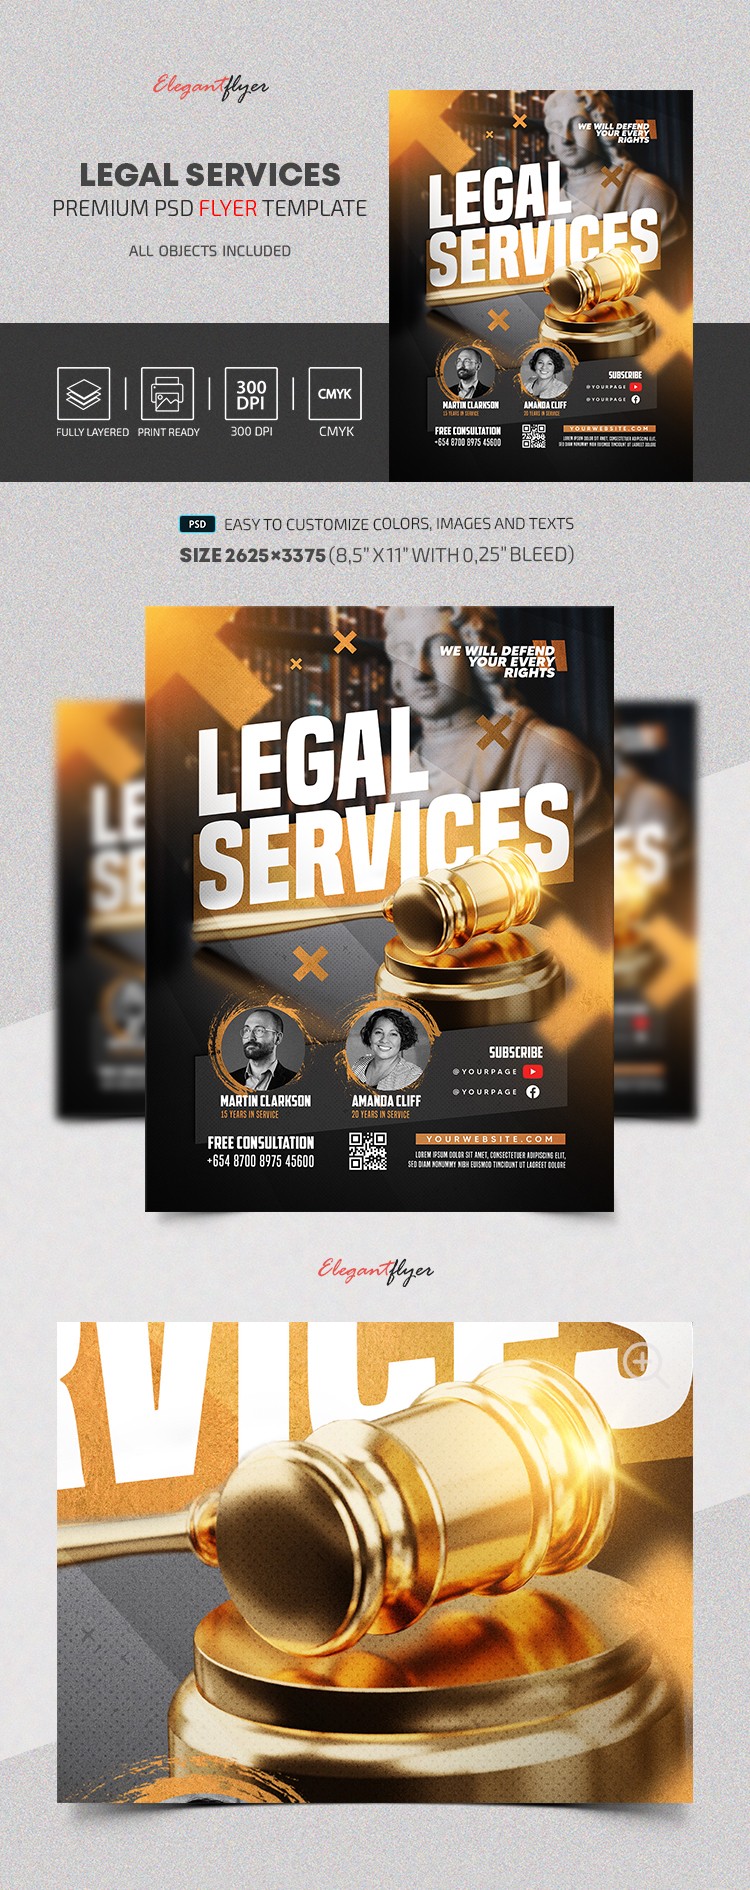 Legal Services Flyer by ElegantFlyer